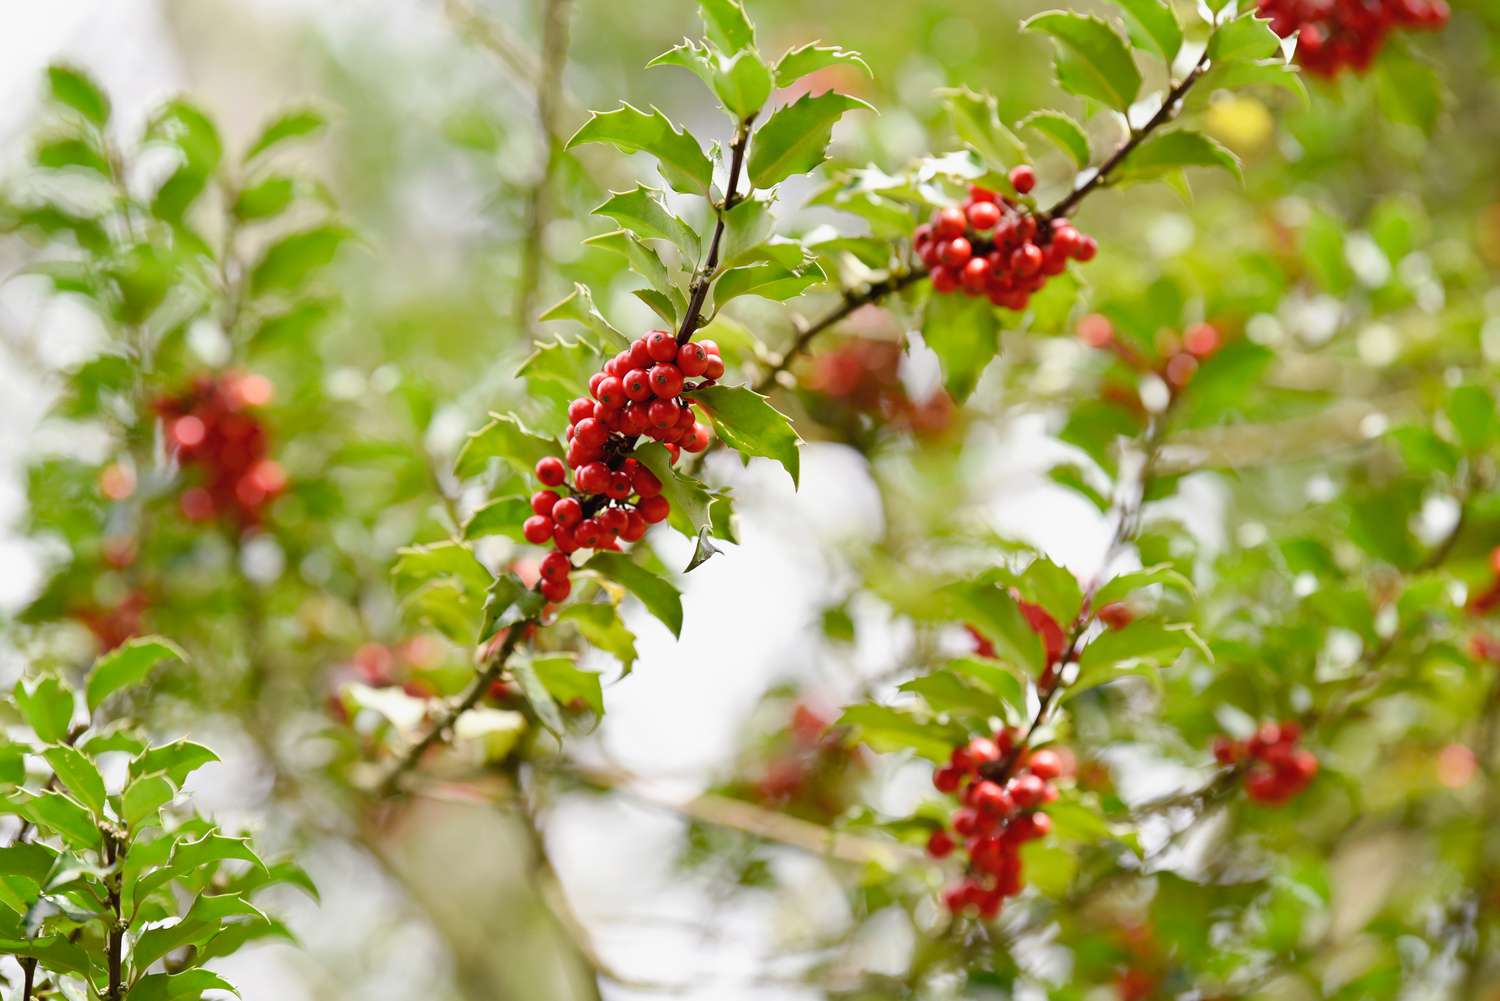 Stechpalmenzweig mit roten Beeren, die von stacheligen Blättern umgeben sind